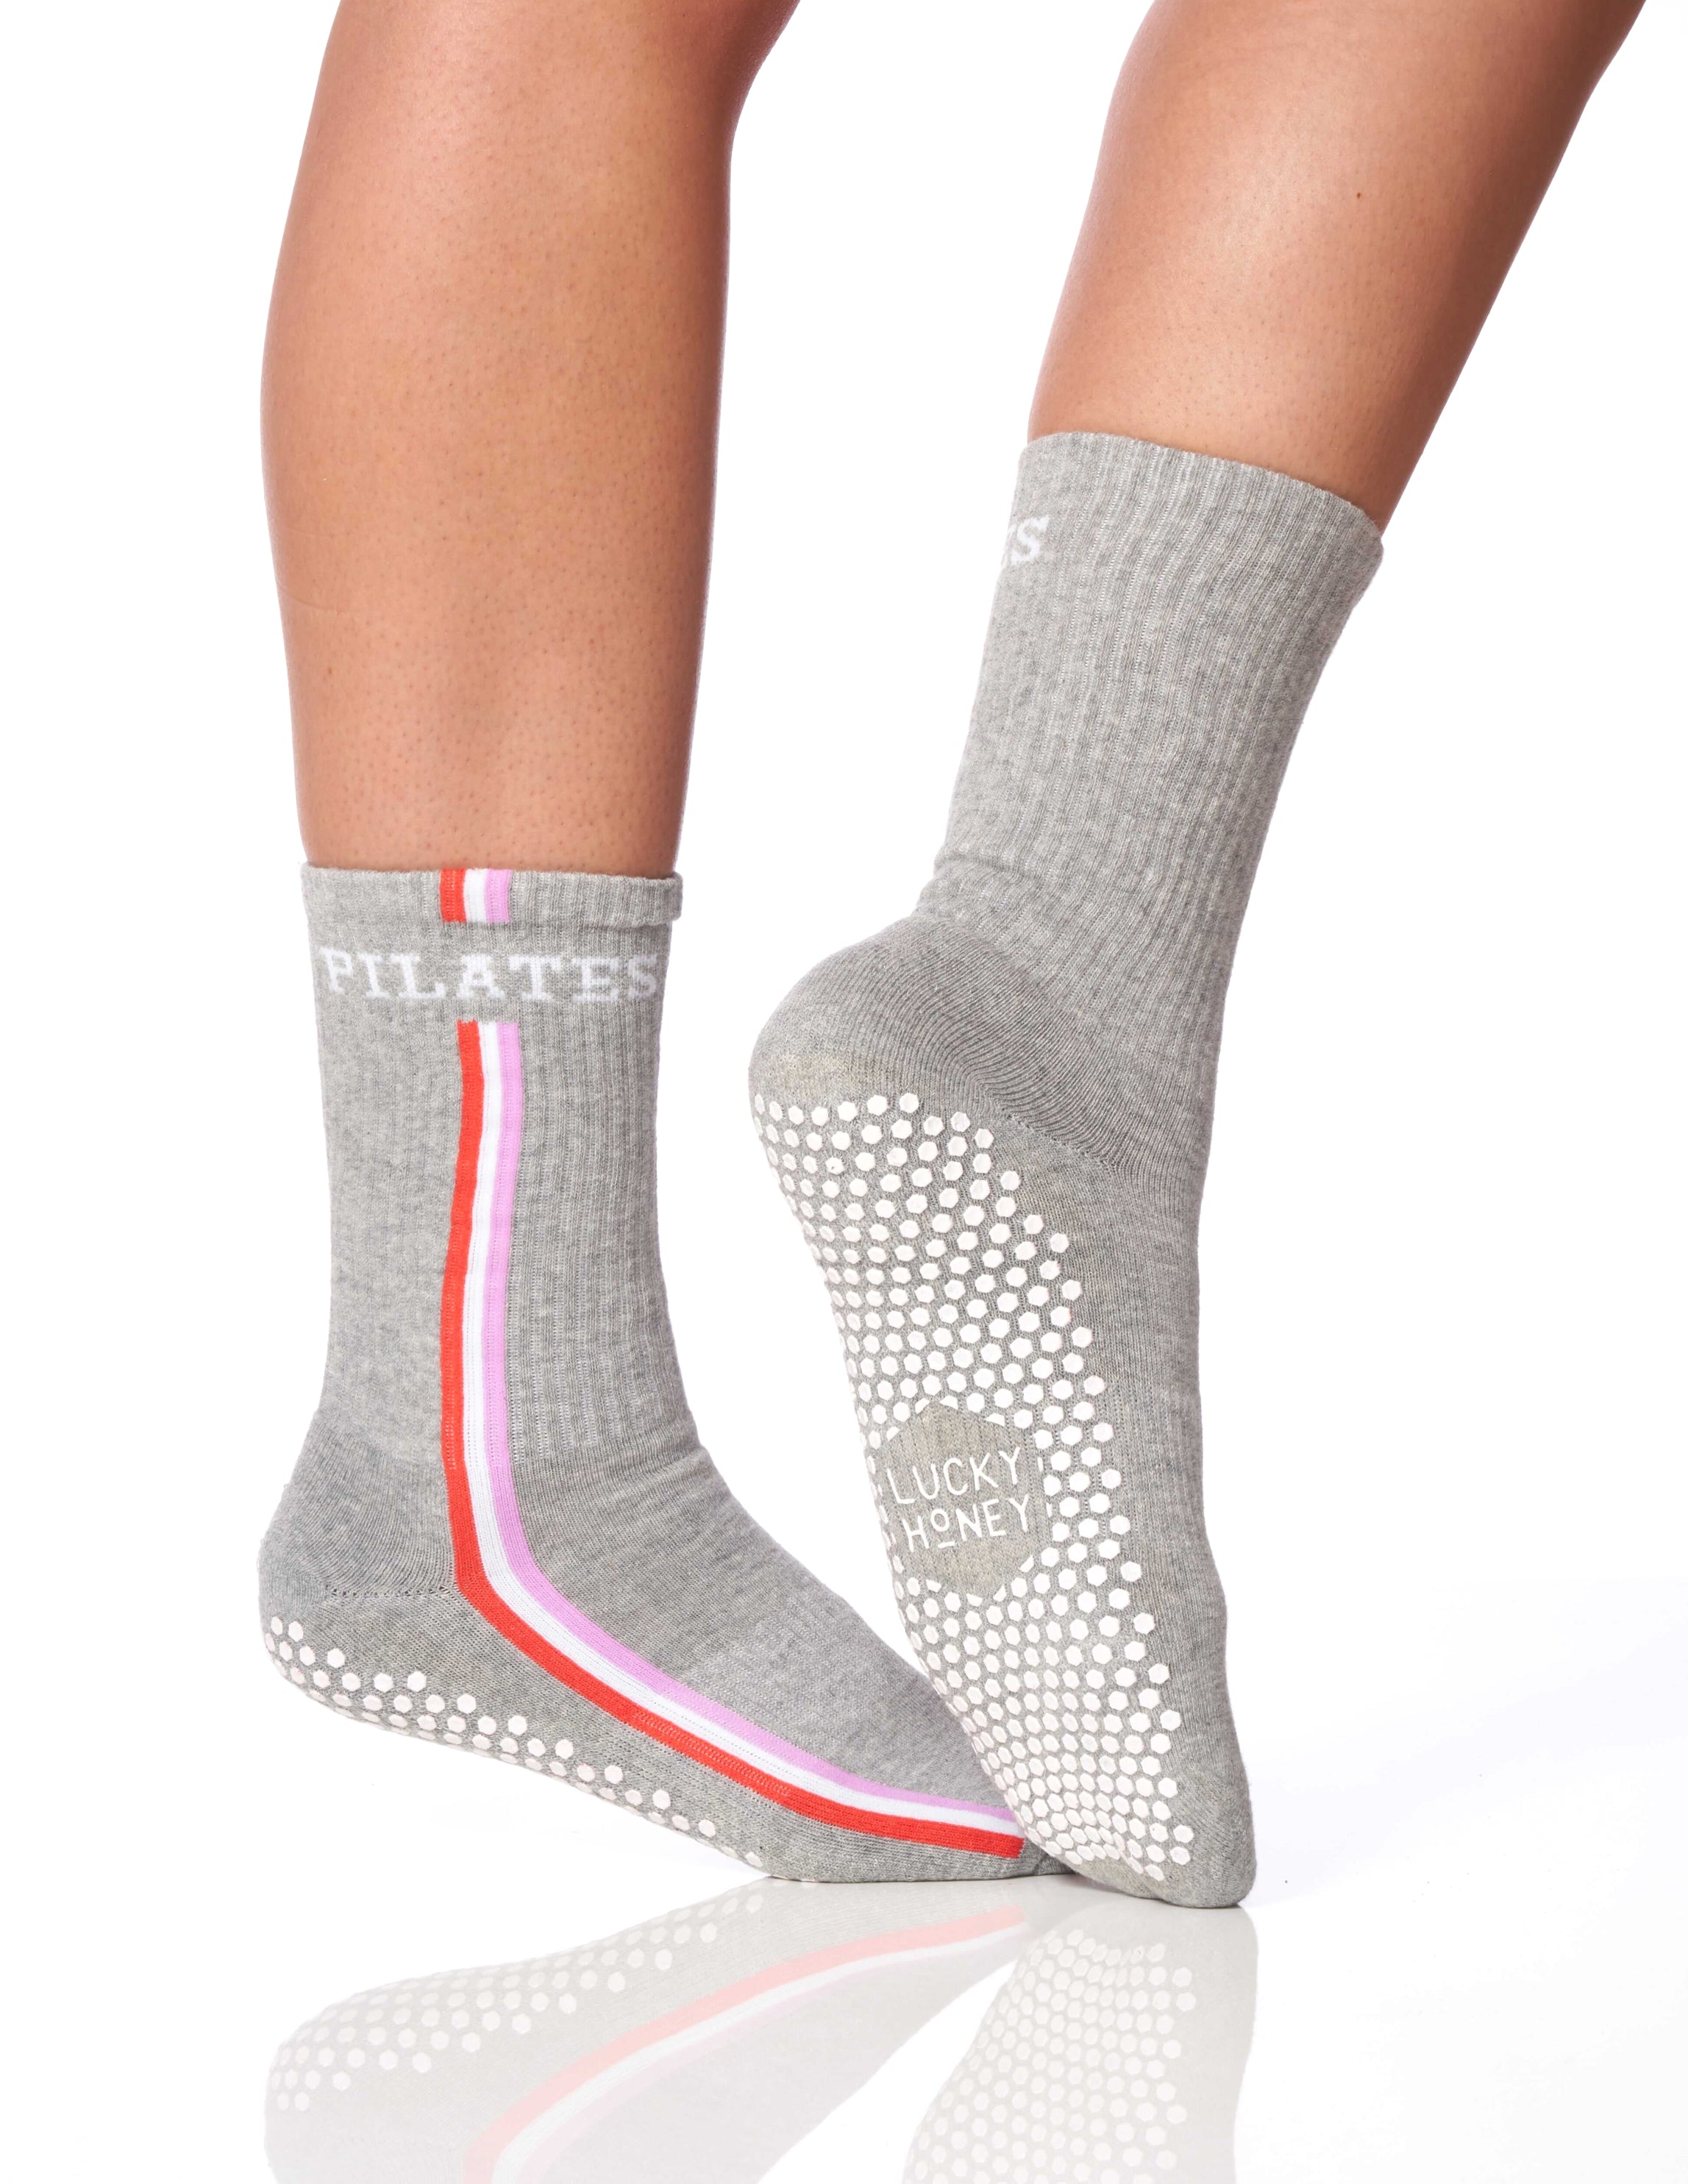 LUCKY HONEY Socks < Barre + Pilates + Yoga Grip Socks